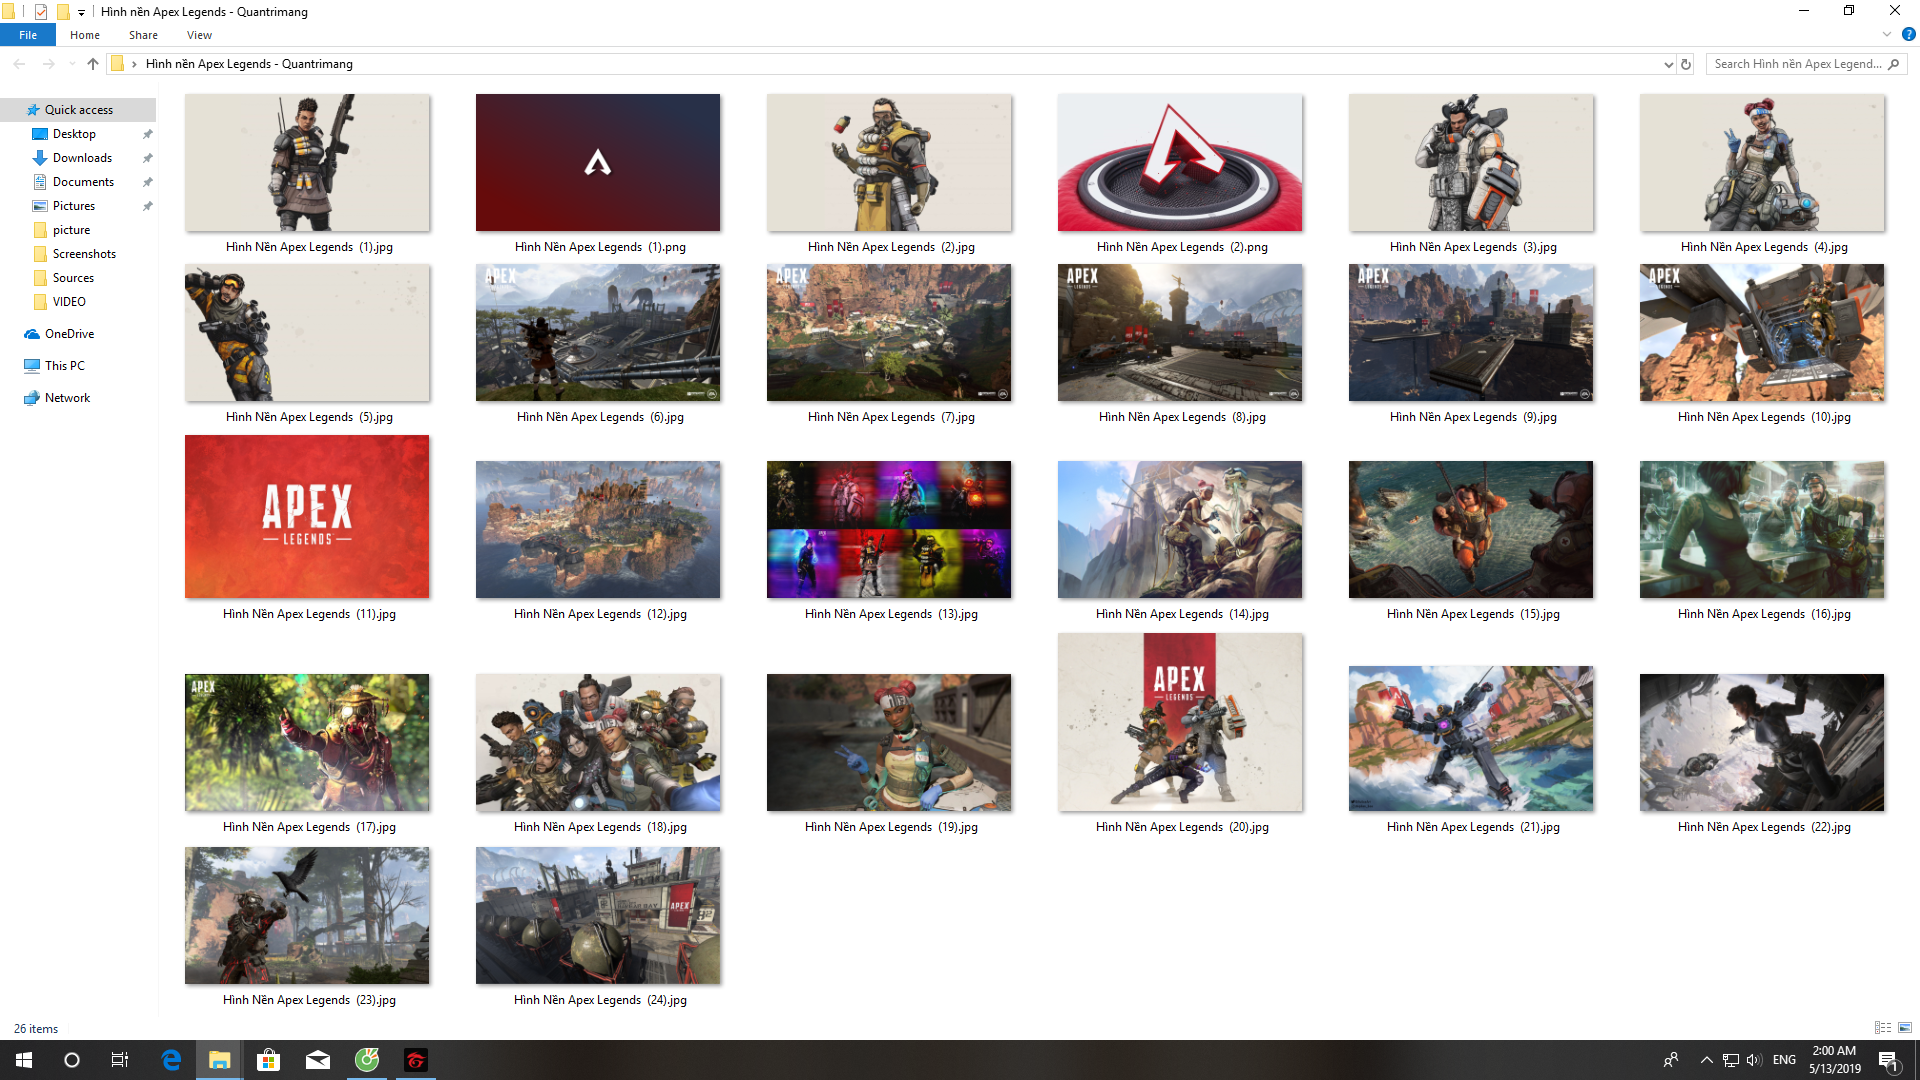 Apex Legends Wallpapers  Top 65 Best Apex Legends Backgrounds Download